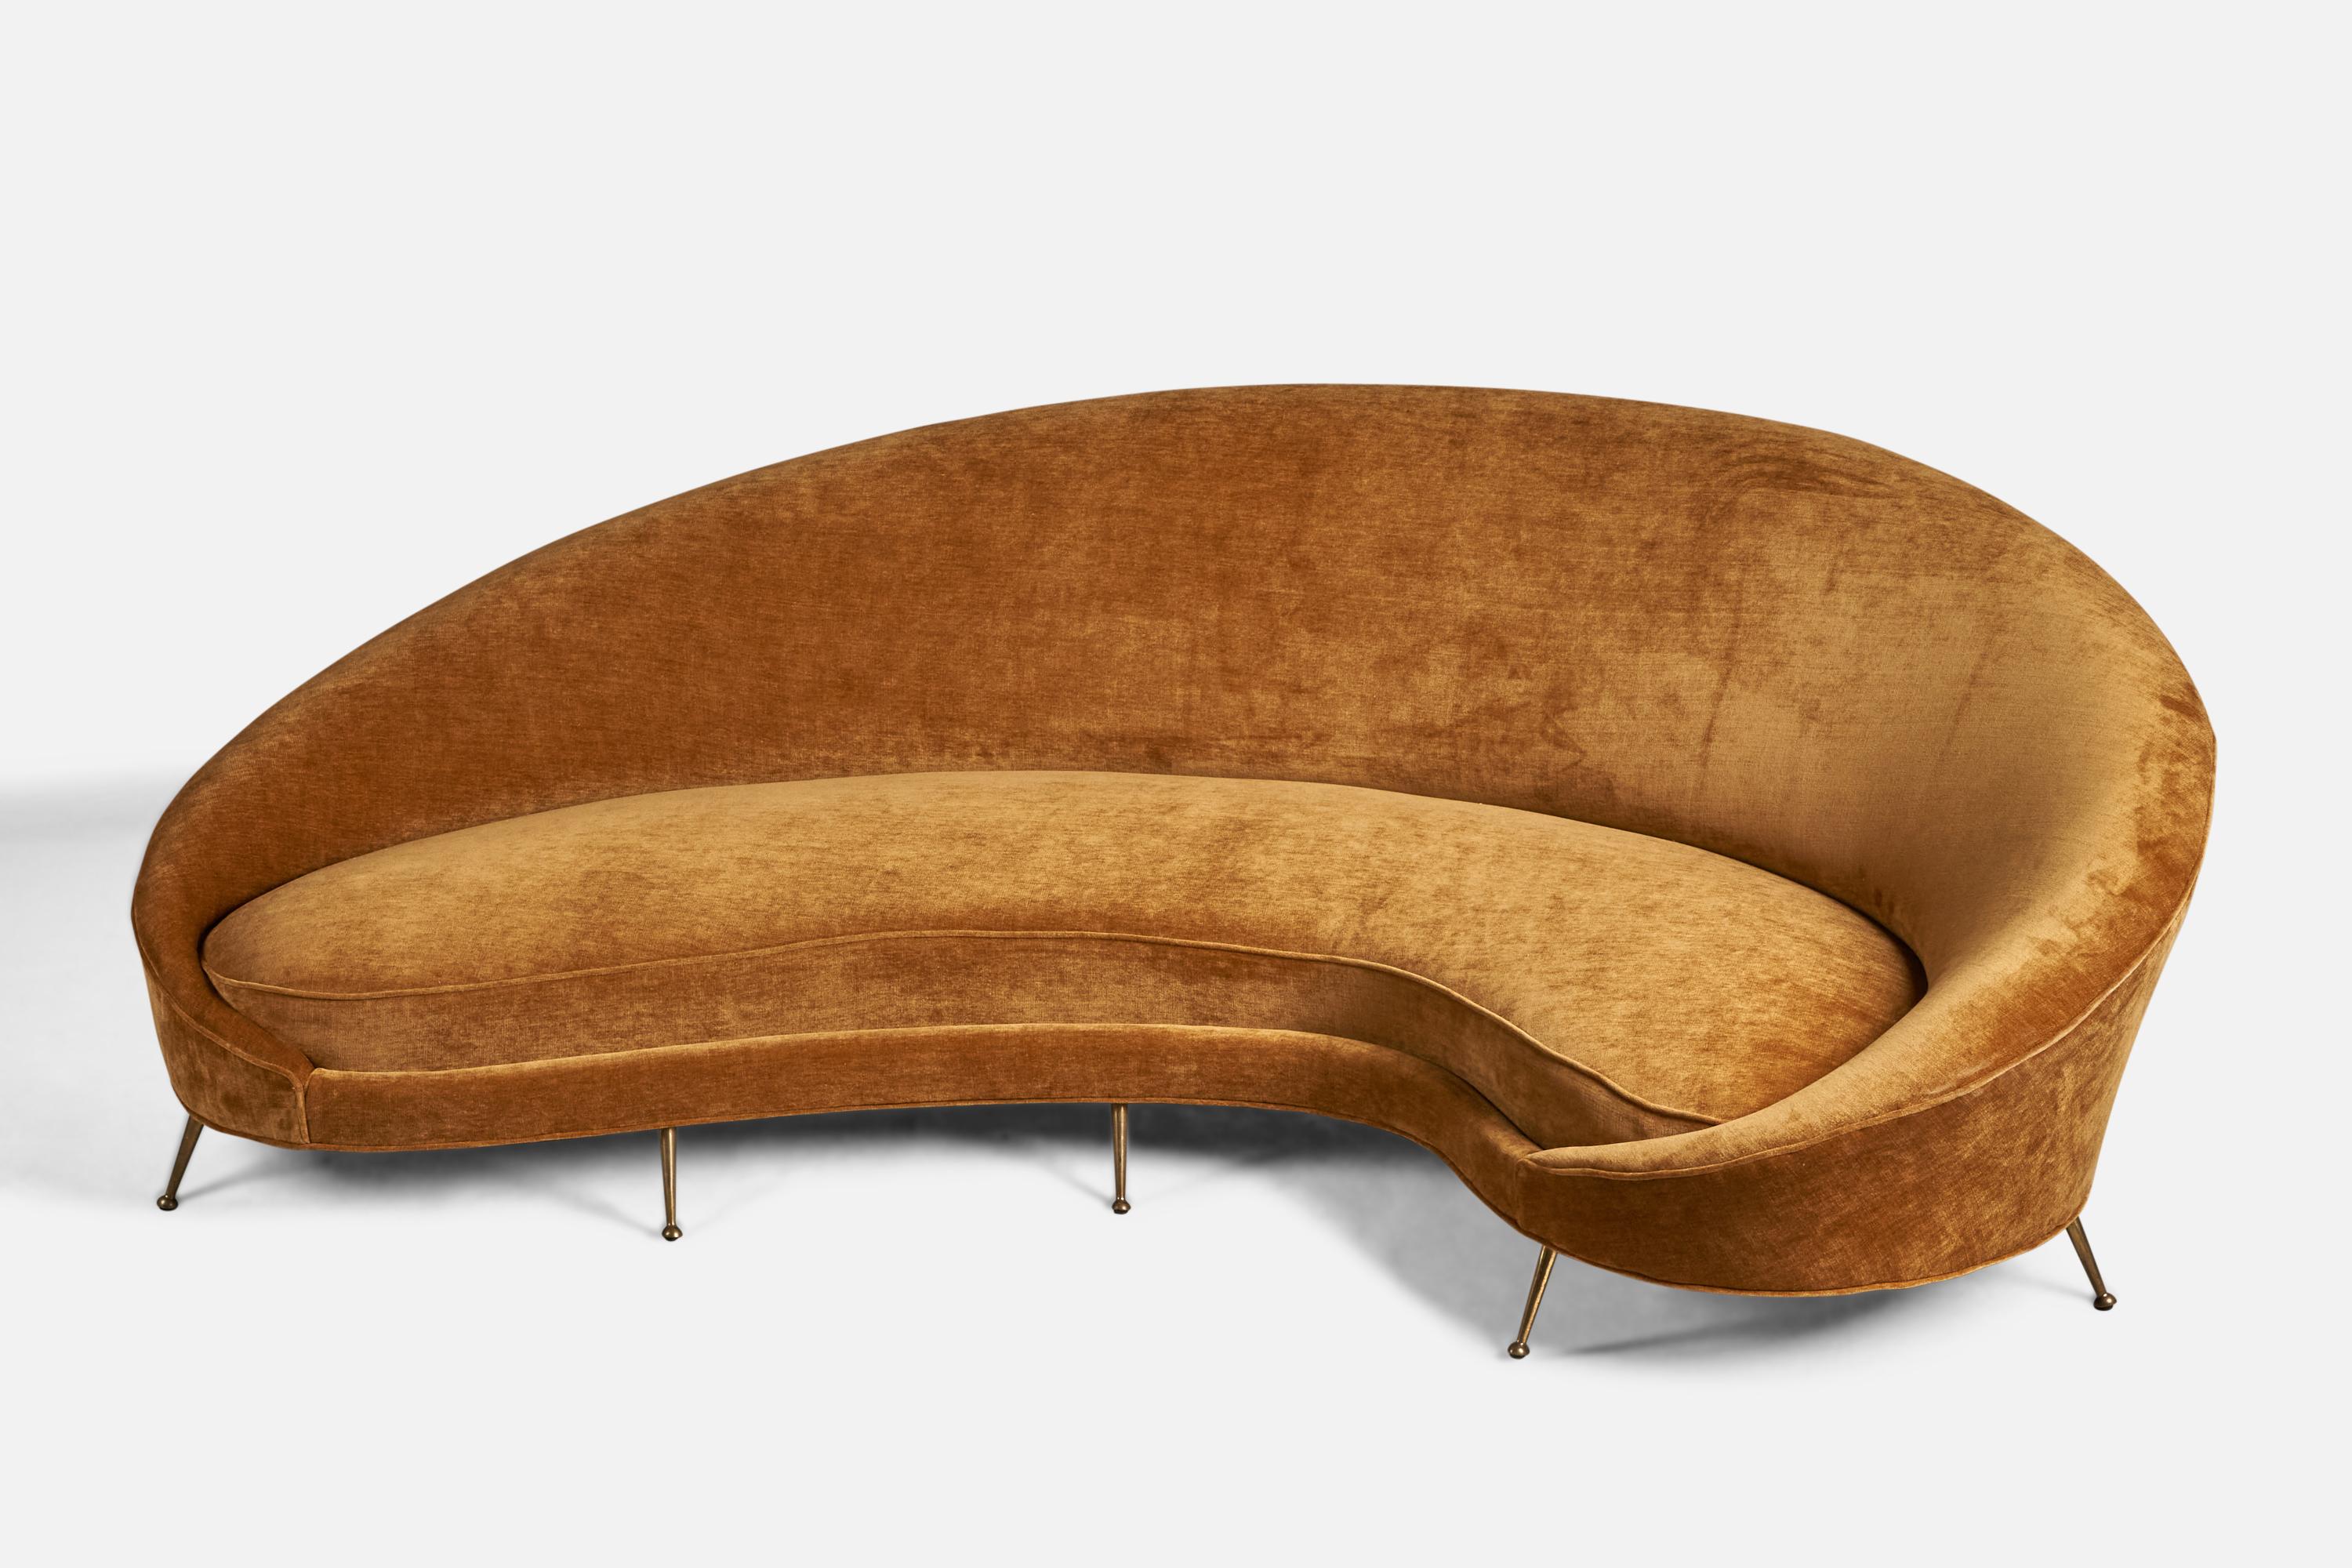 Canapé incurvé en laiton et tissu de velours orange conçu par Federico Munari et produit par ISA Bergamo, Italie, années 1950.

Hauteur d'assise de 14 pouces
